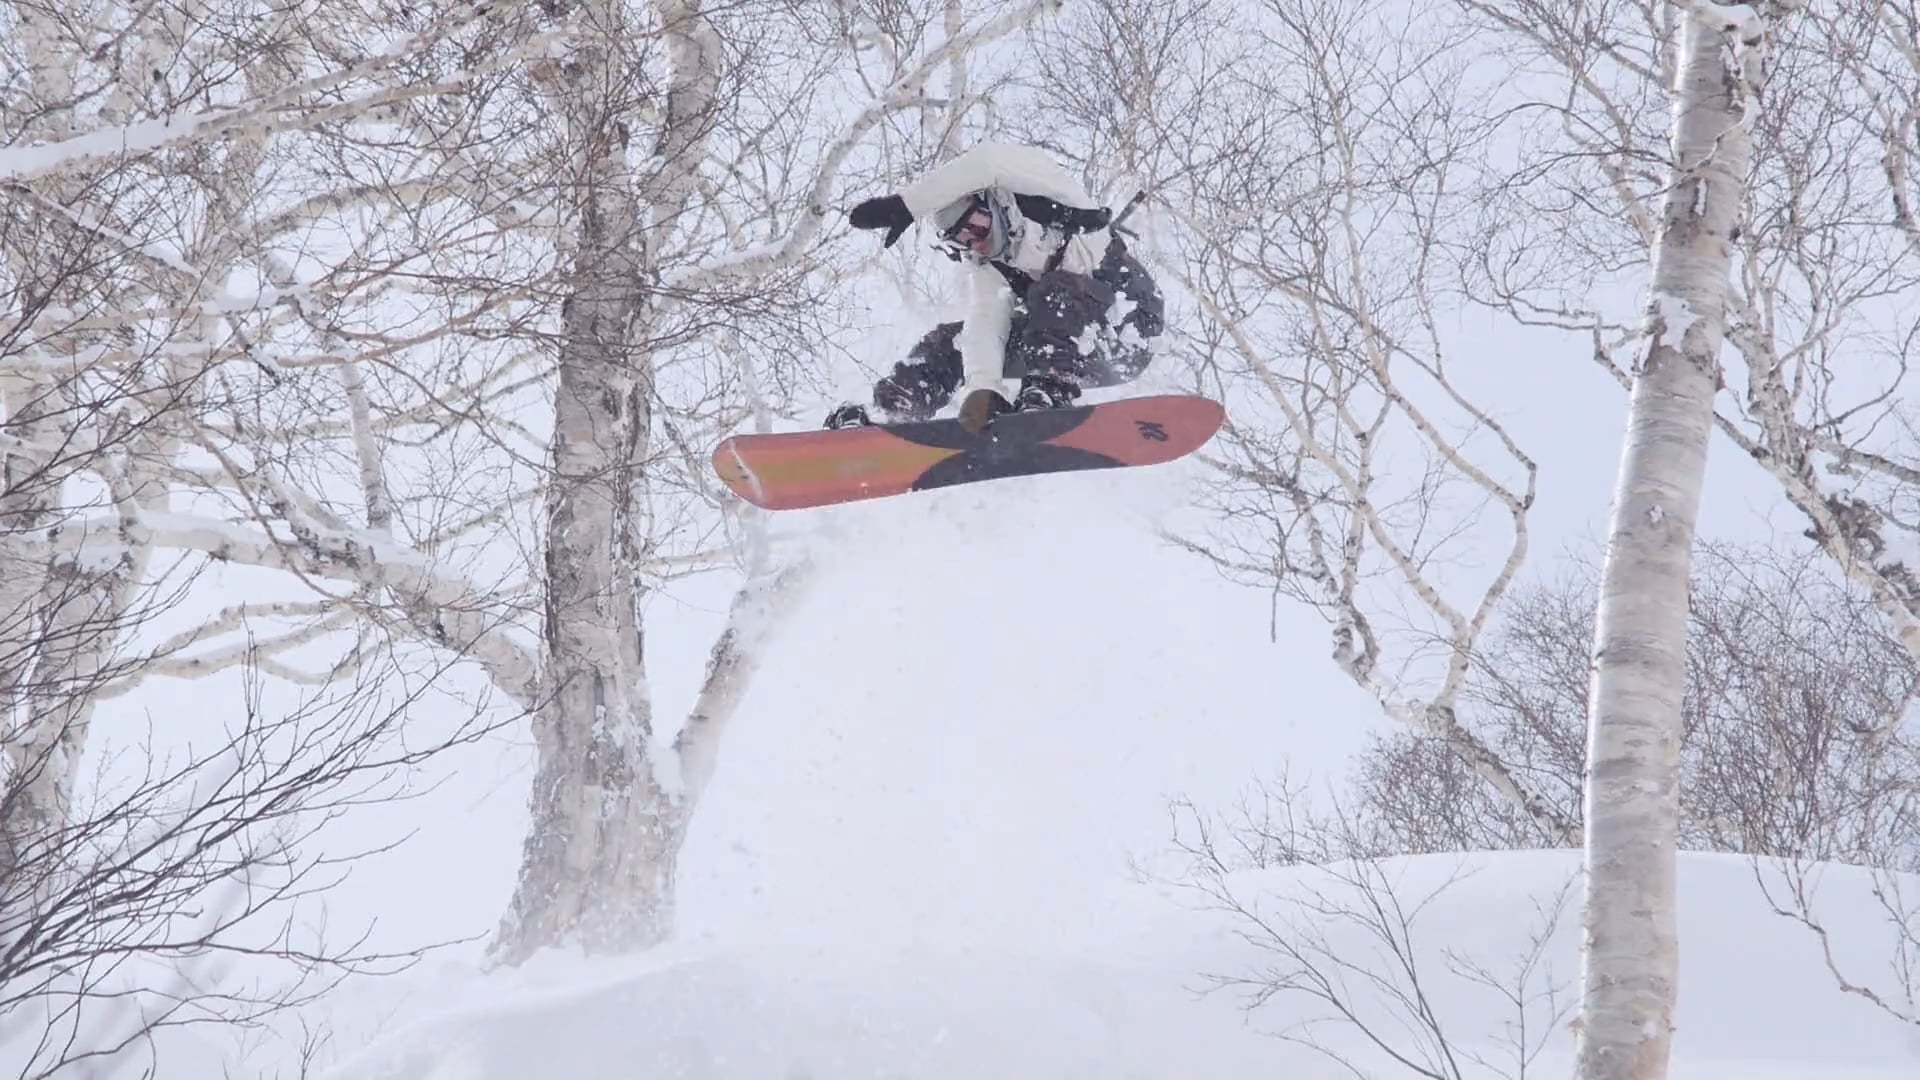 SEAN PETTIT Snowboard Part on Vimeo